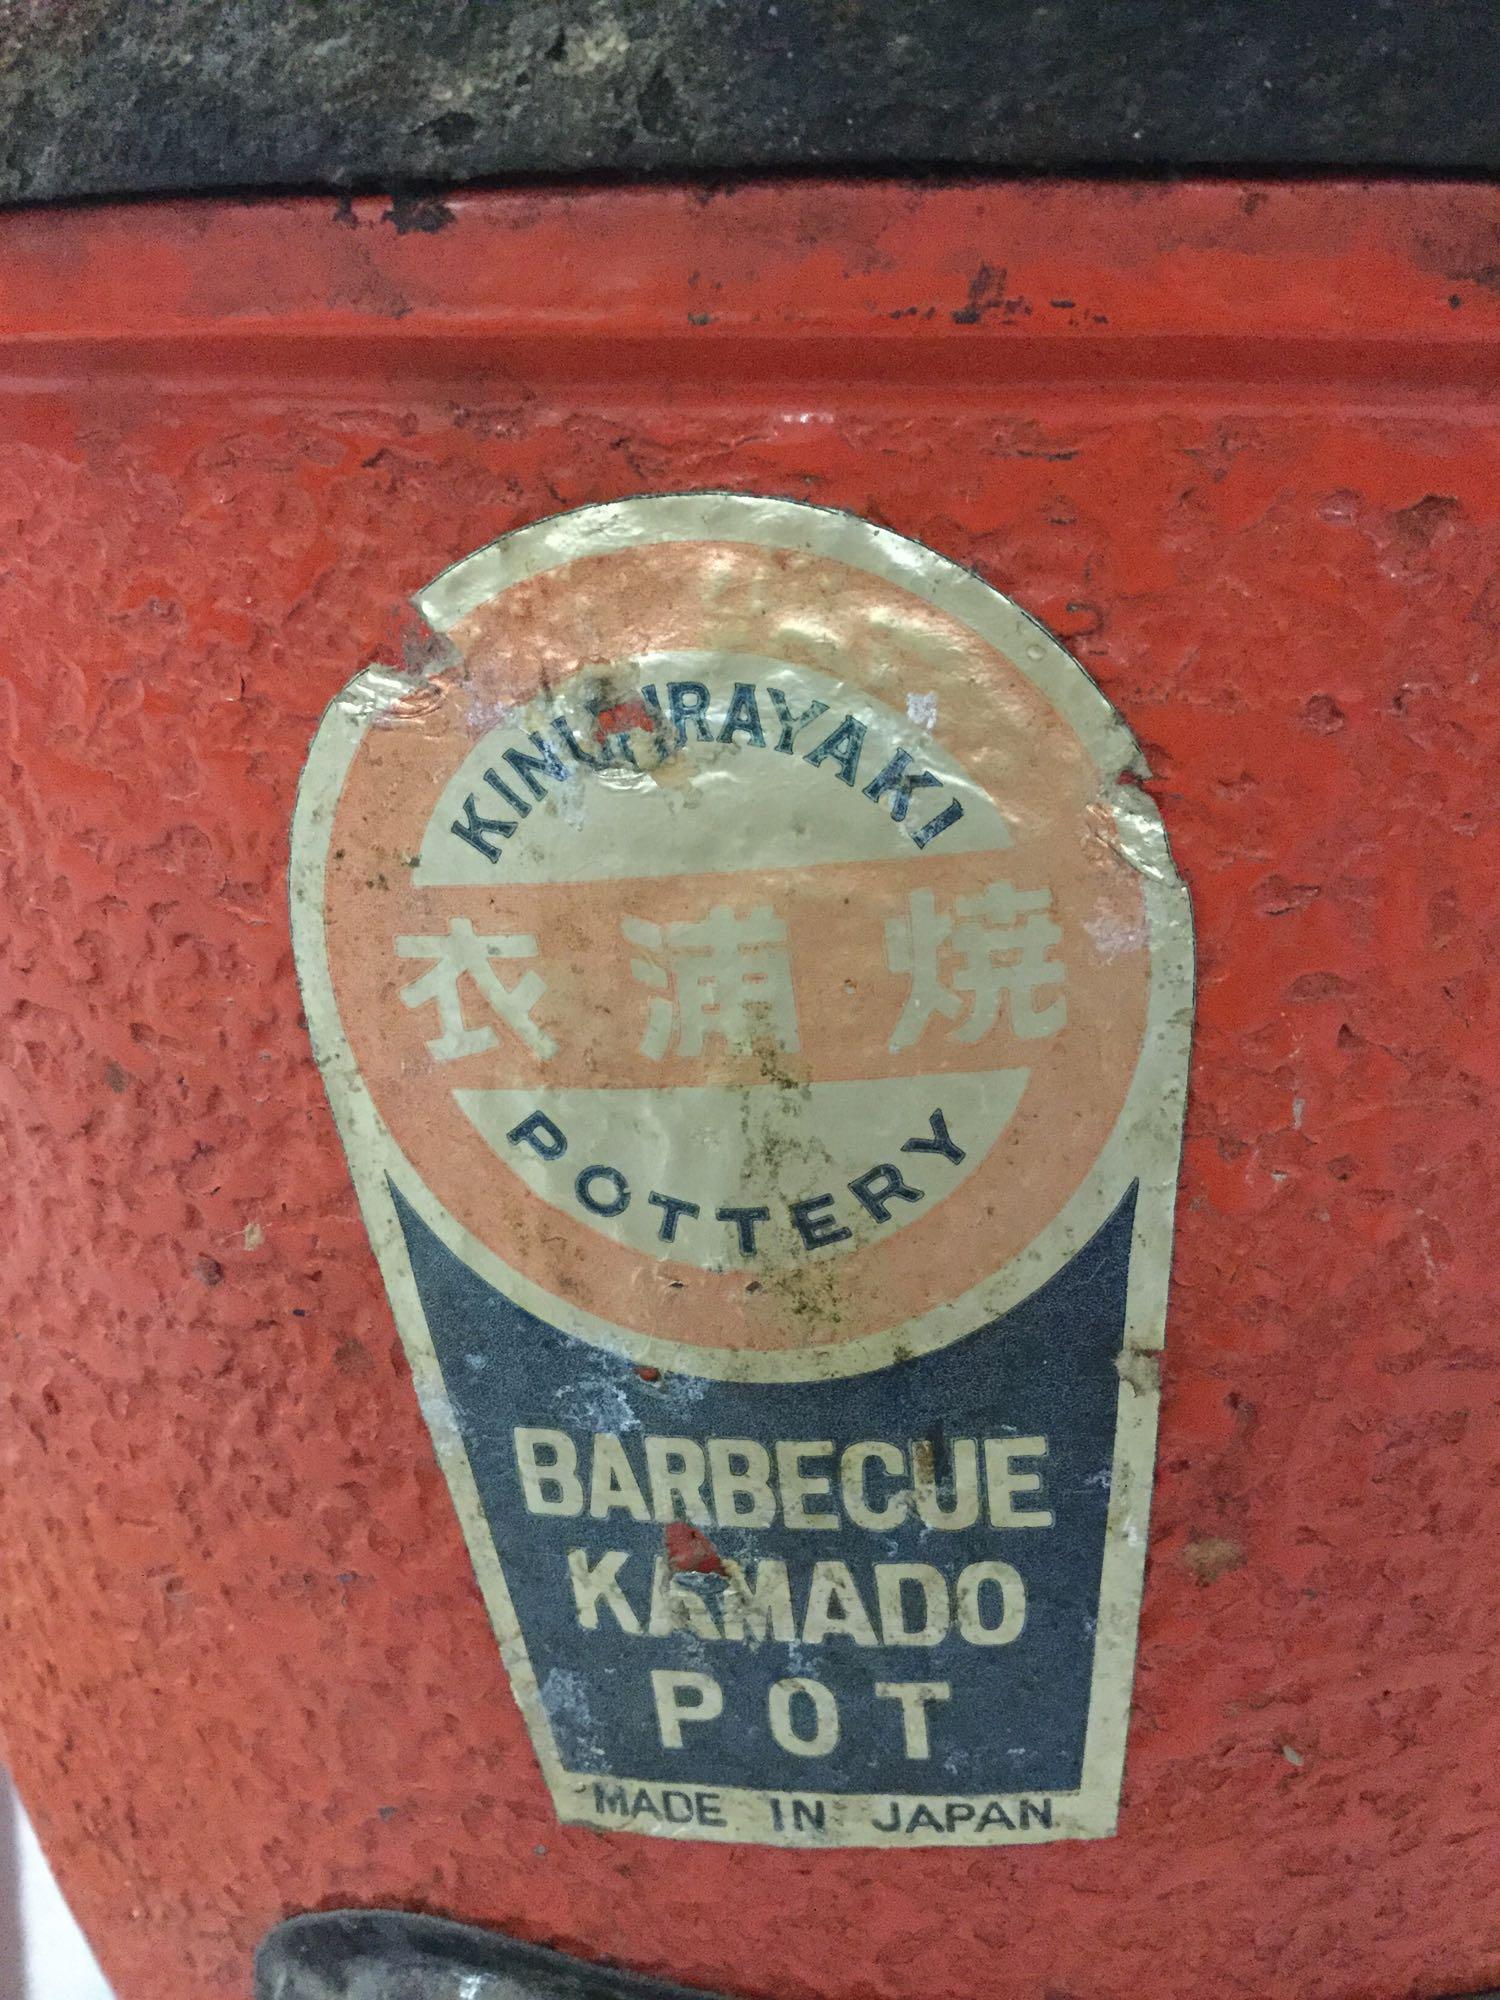 Used Kinuurayaki barbecue Kamado smoker pot.